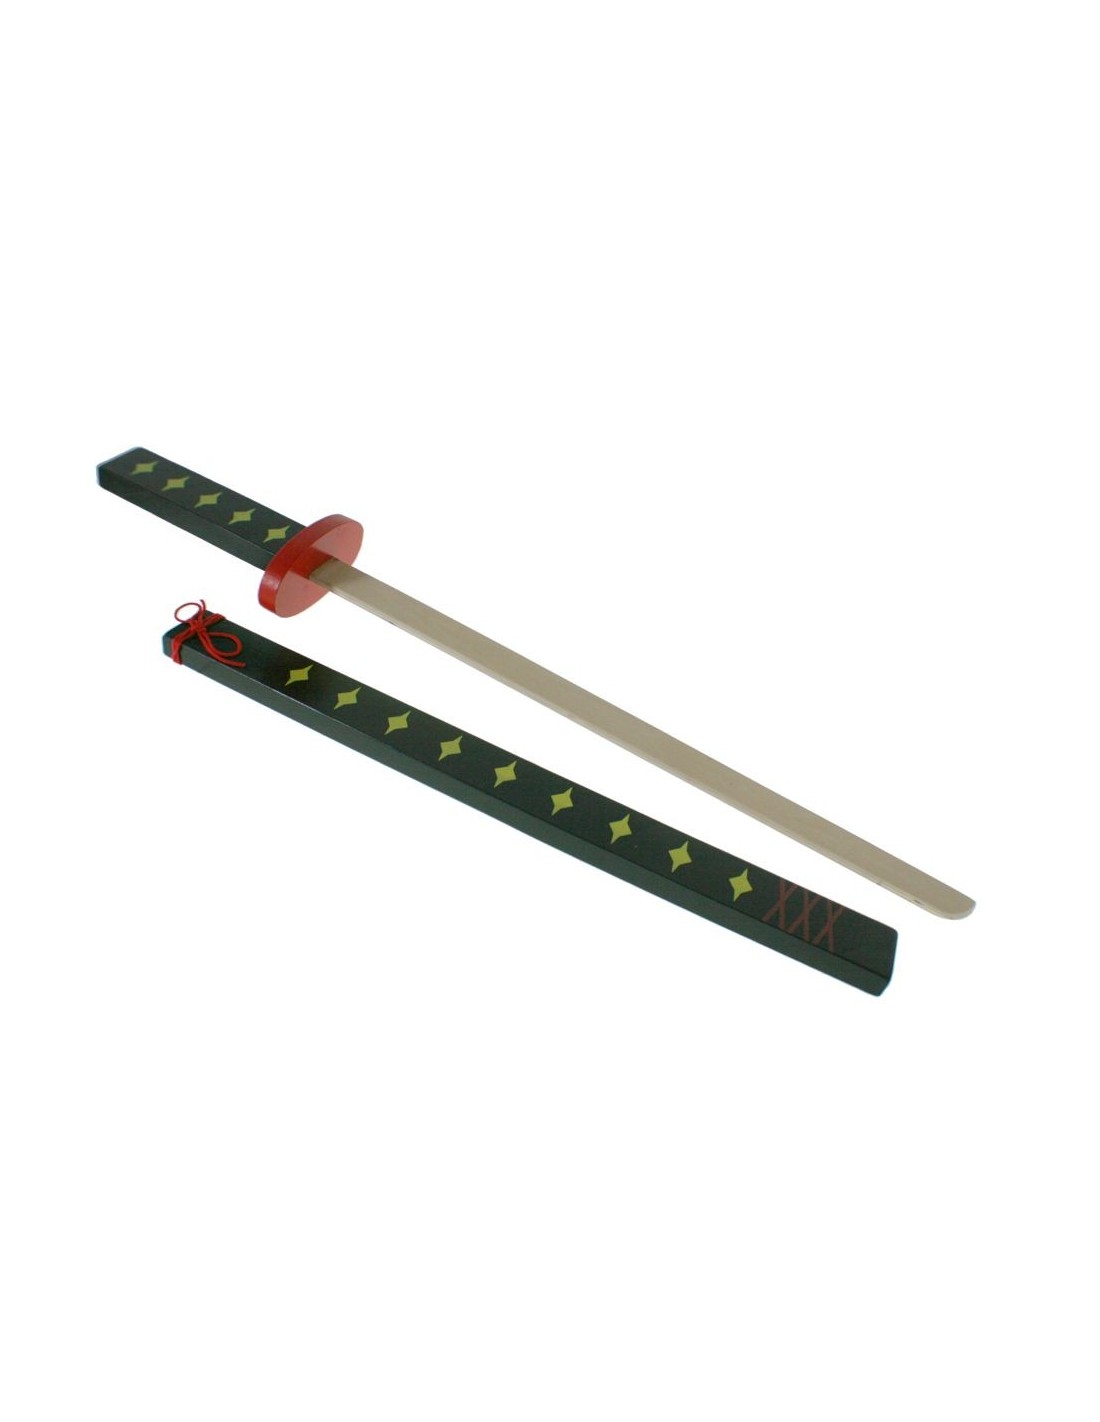  Espada o Katana japonesa de madera decorada para juego infantil complemento y accesorio disfraces. 